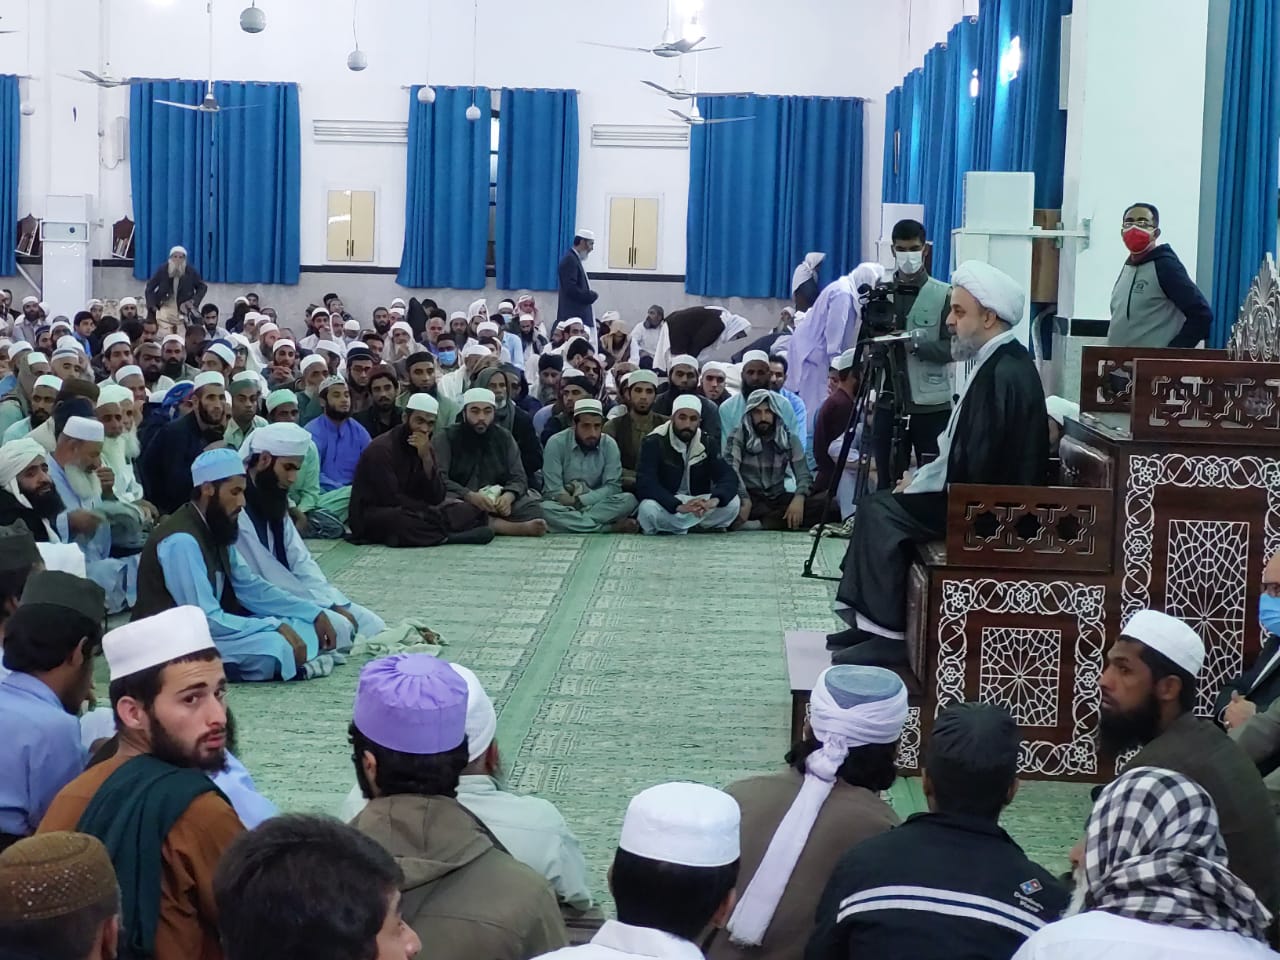 سخنرانی حجت الاسلام و المسلمین دکتر شهریاری در مرکز جماعت تبلیغ زاهدان